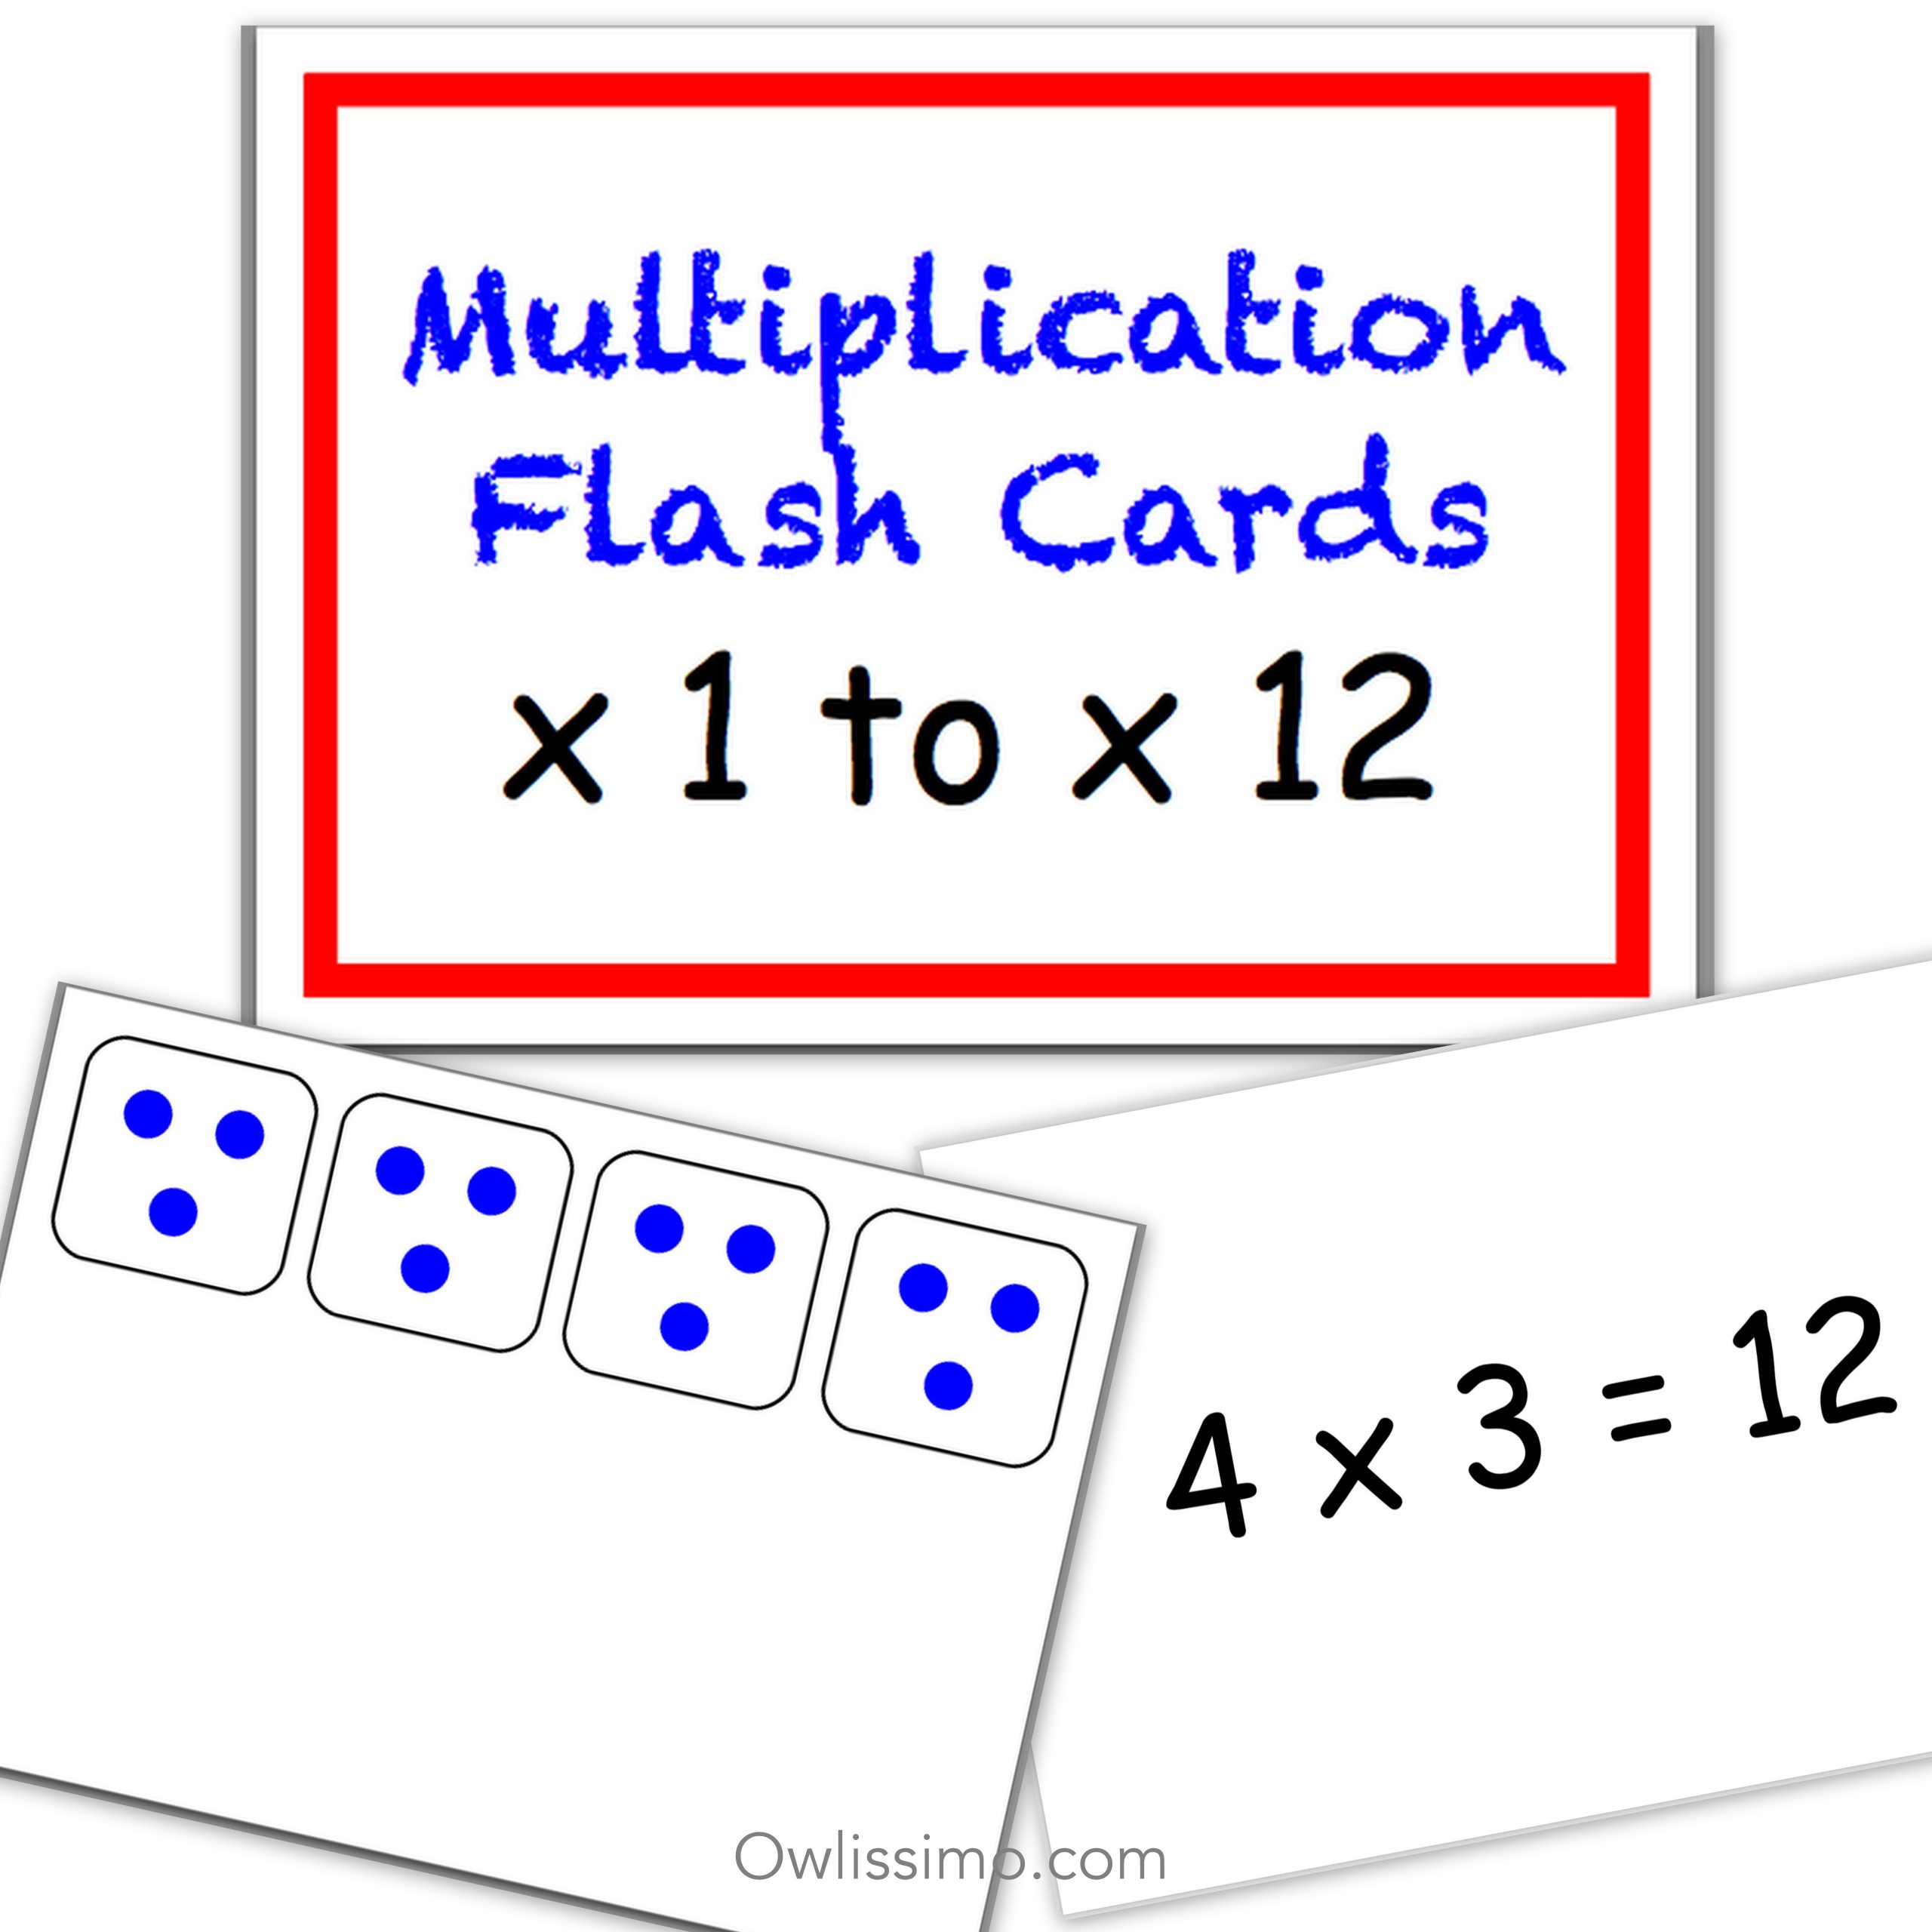 printable-flashcards-multiplication-owlissimo